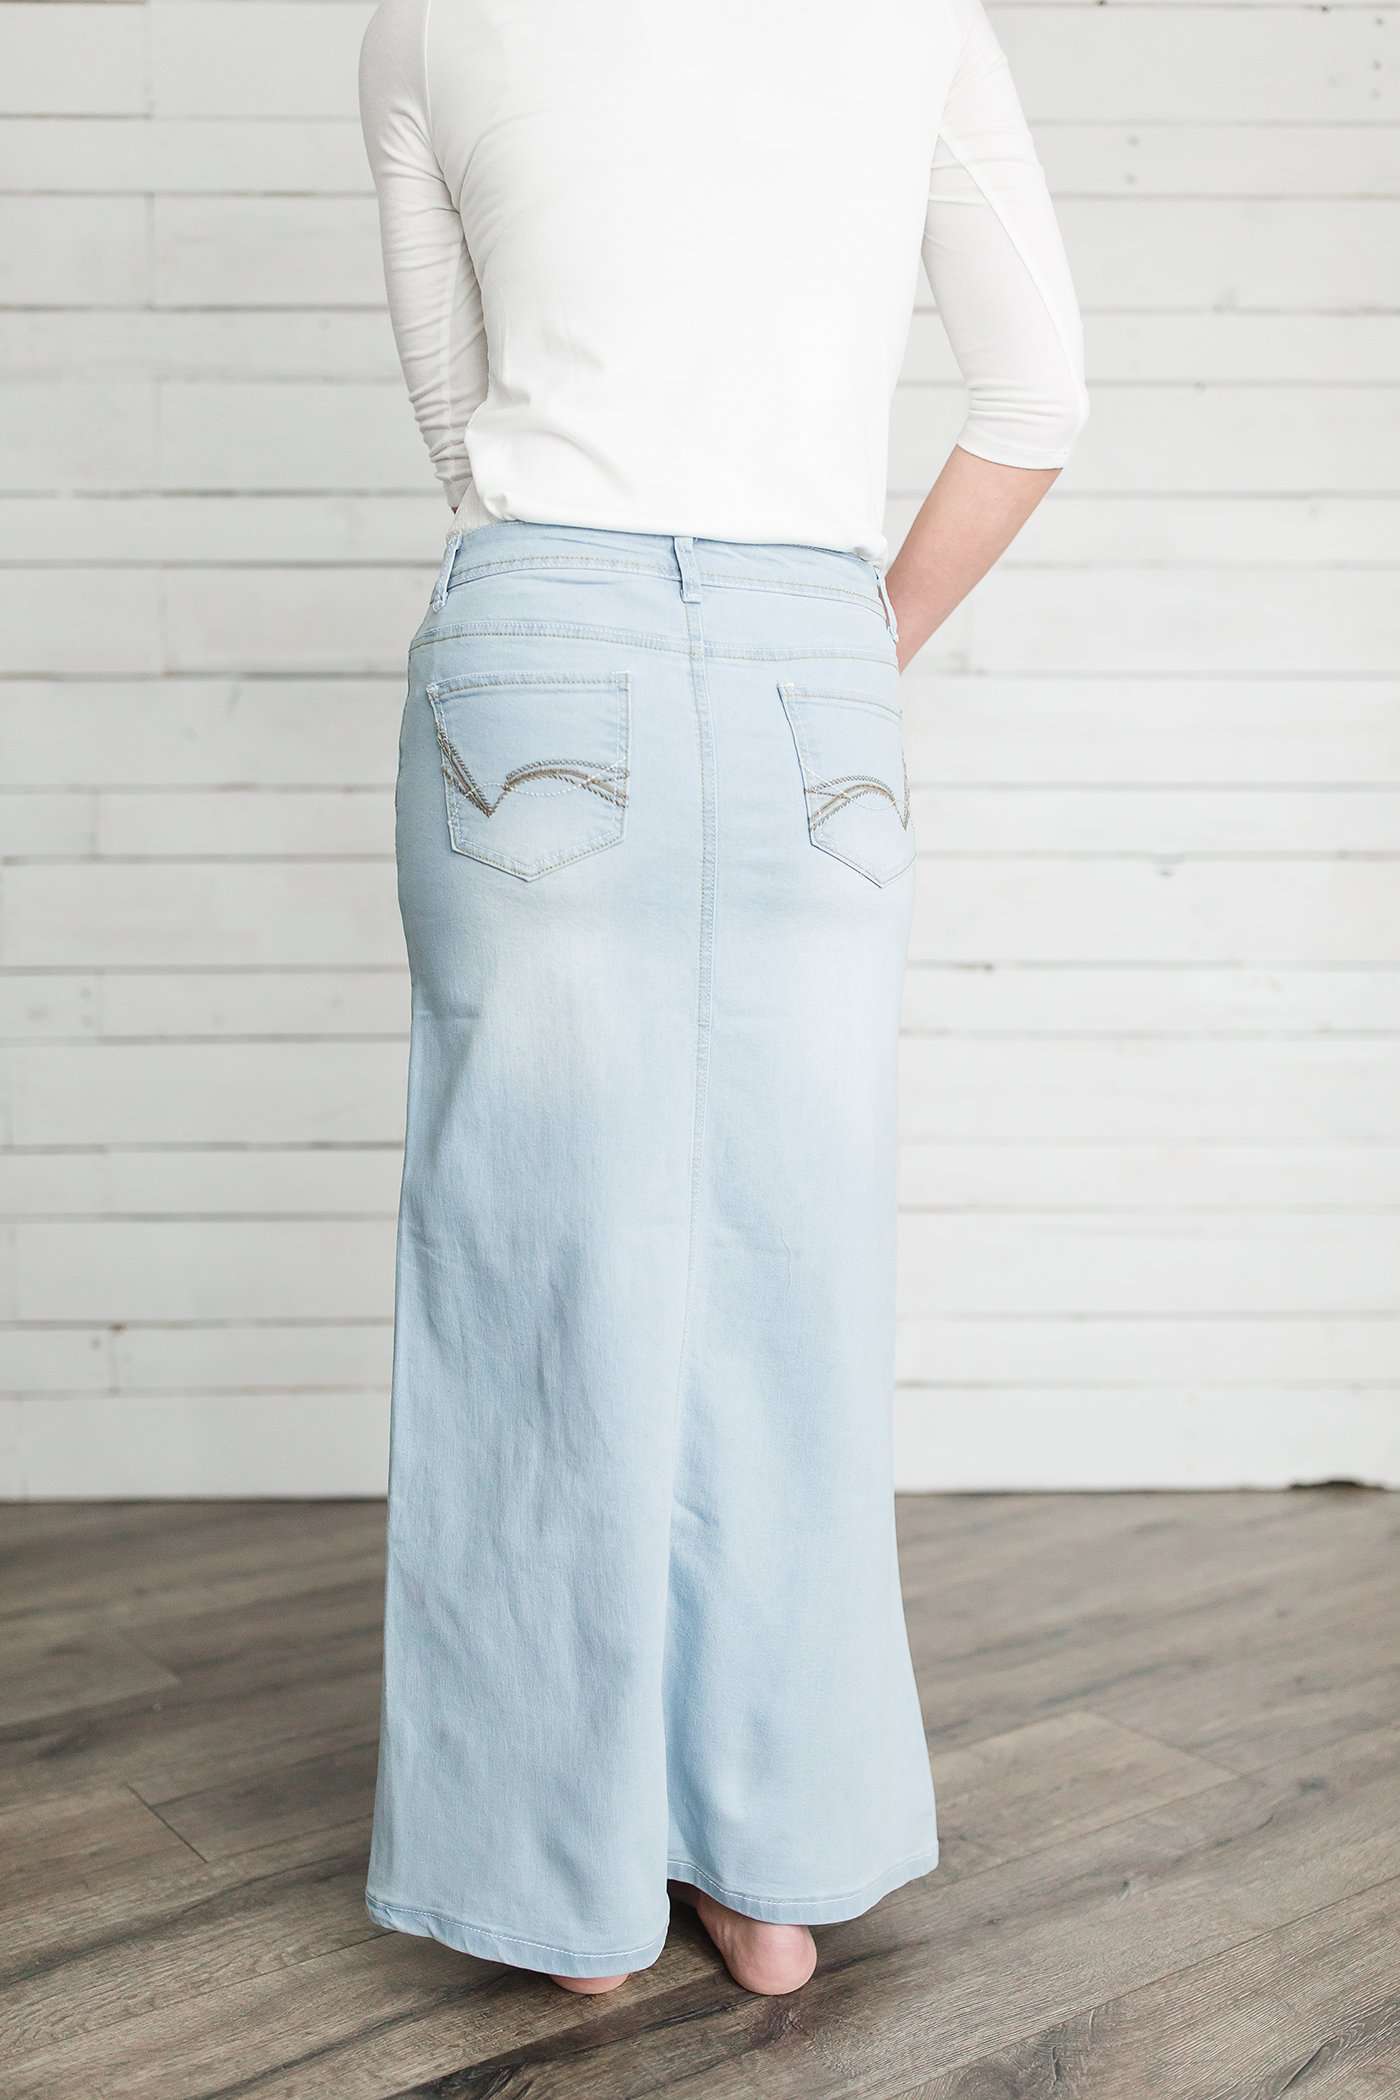 Women's long light wash modest denim-jean skirt.